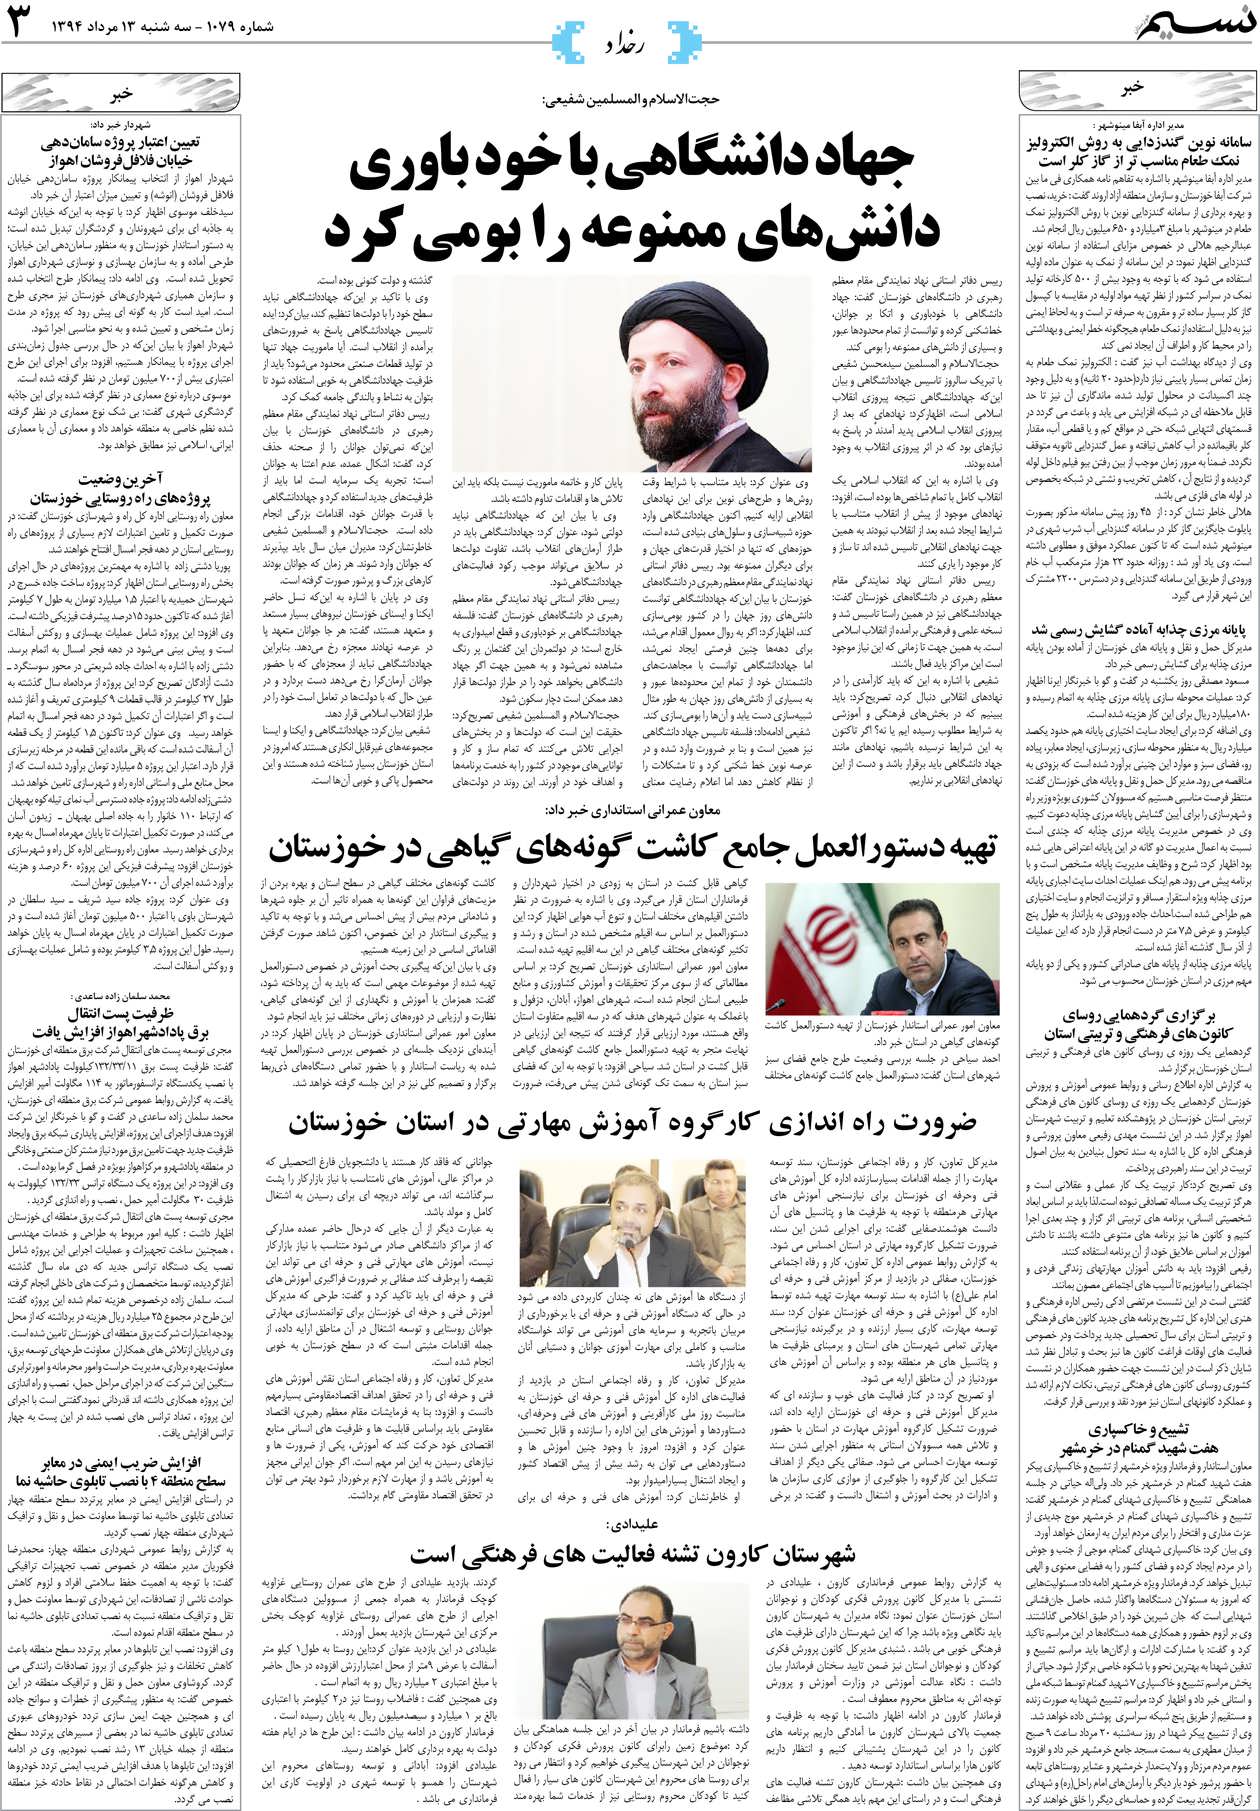 صفحه رخداد روزنامه نسیم شماره 1079